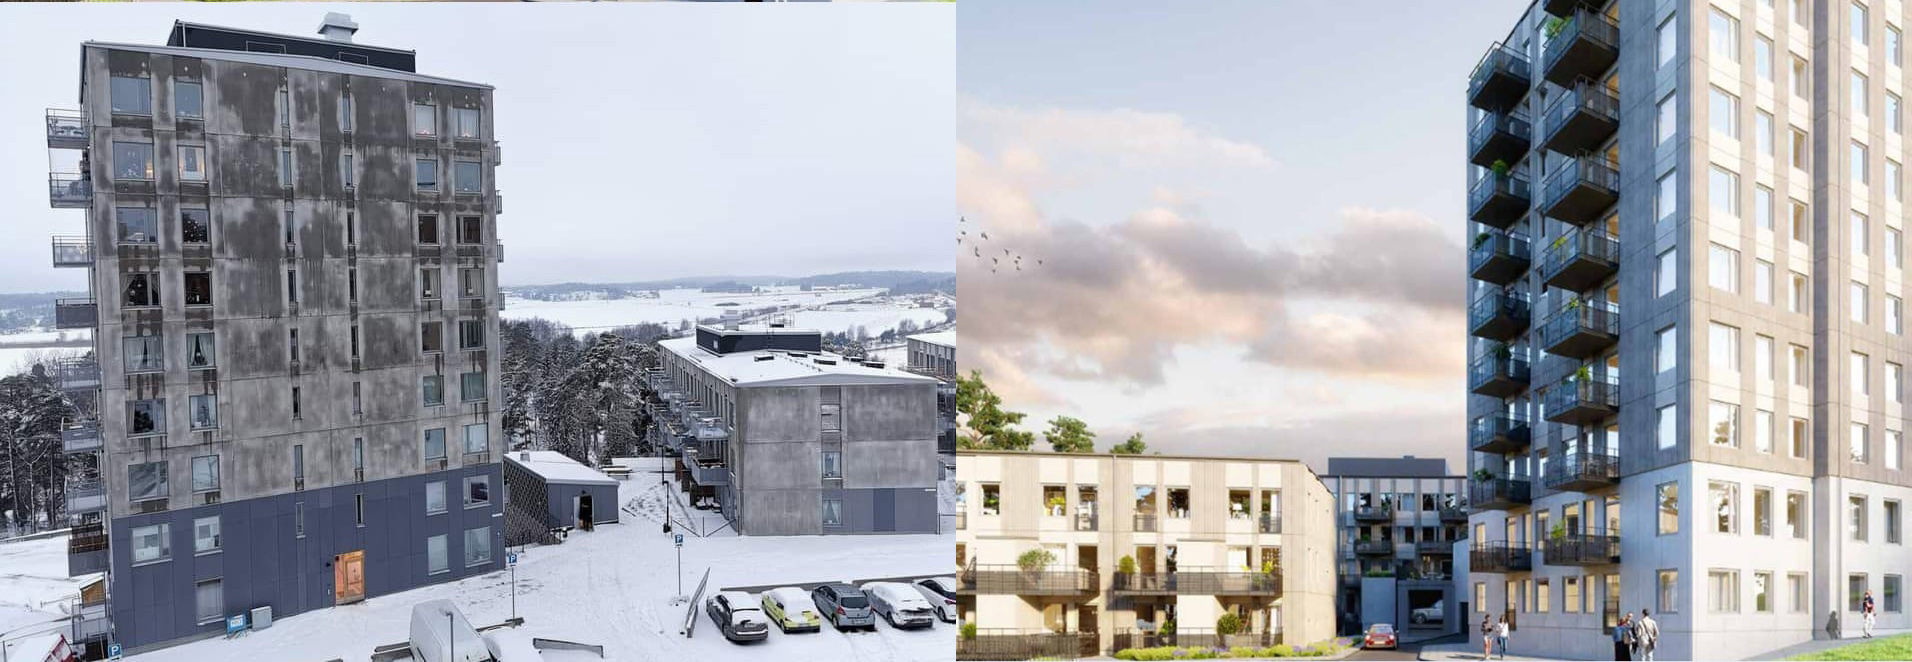 Sten Jonson är årets näst lurigaste arkitekt med sin falska visionsbild